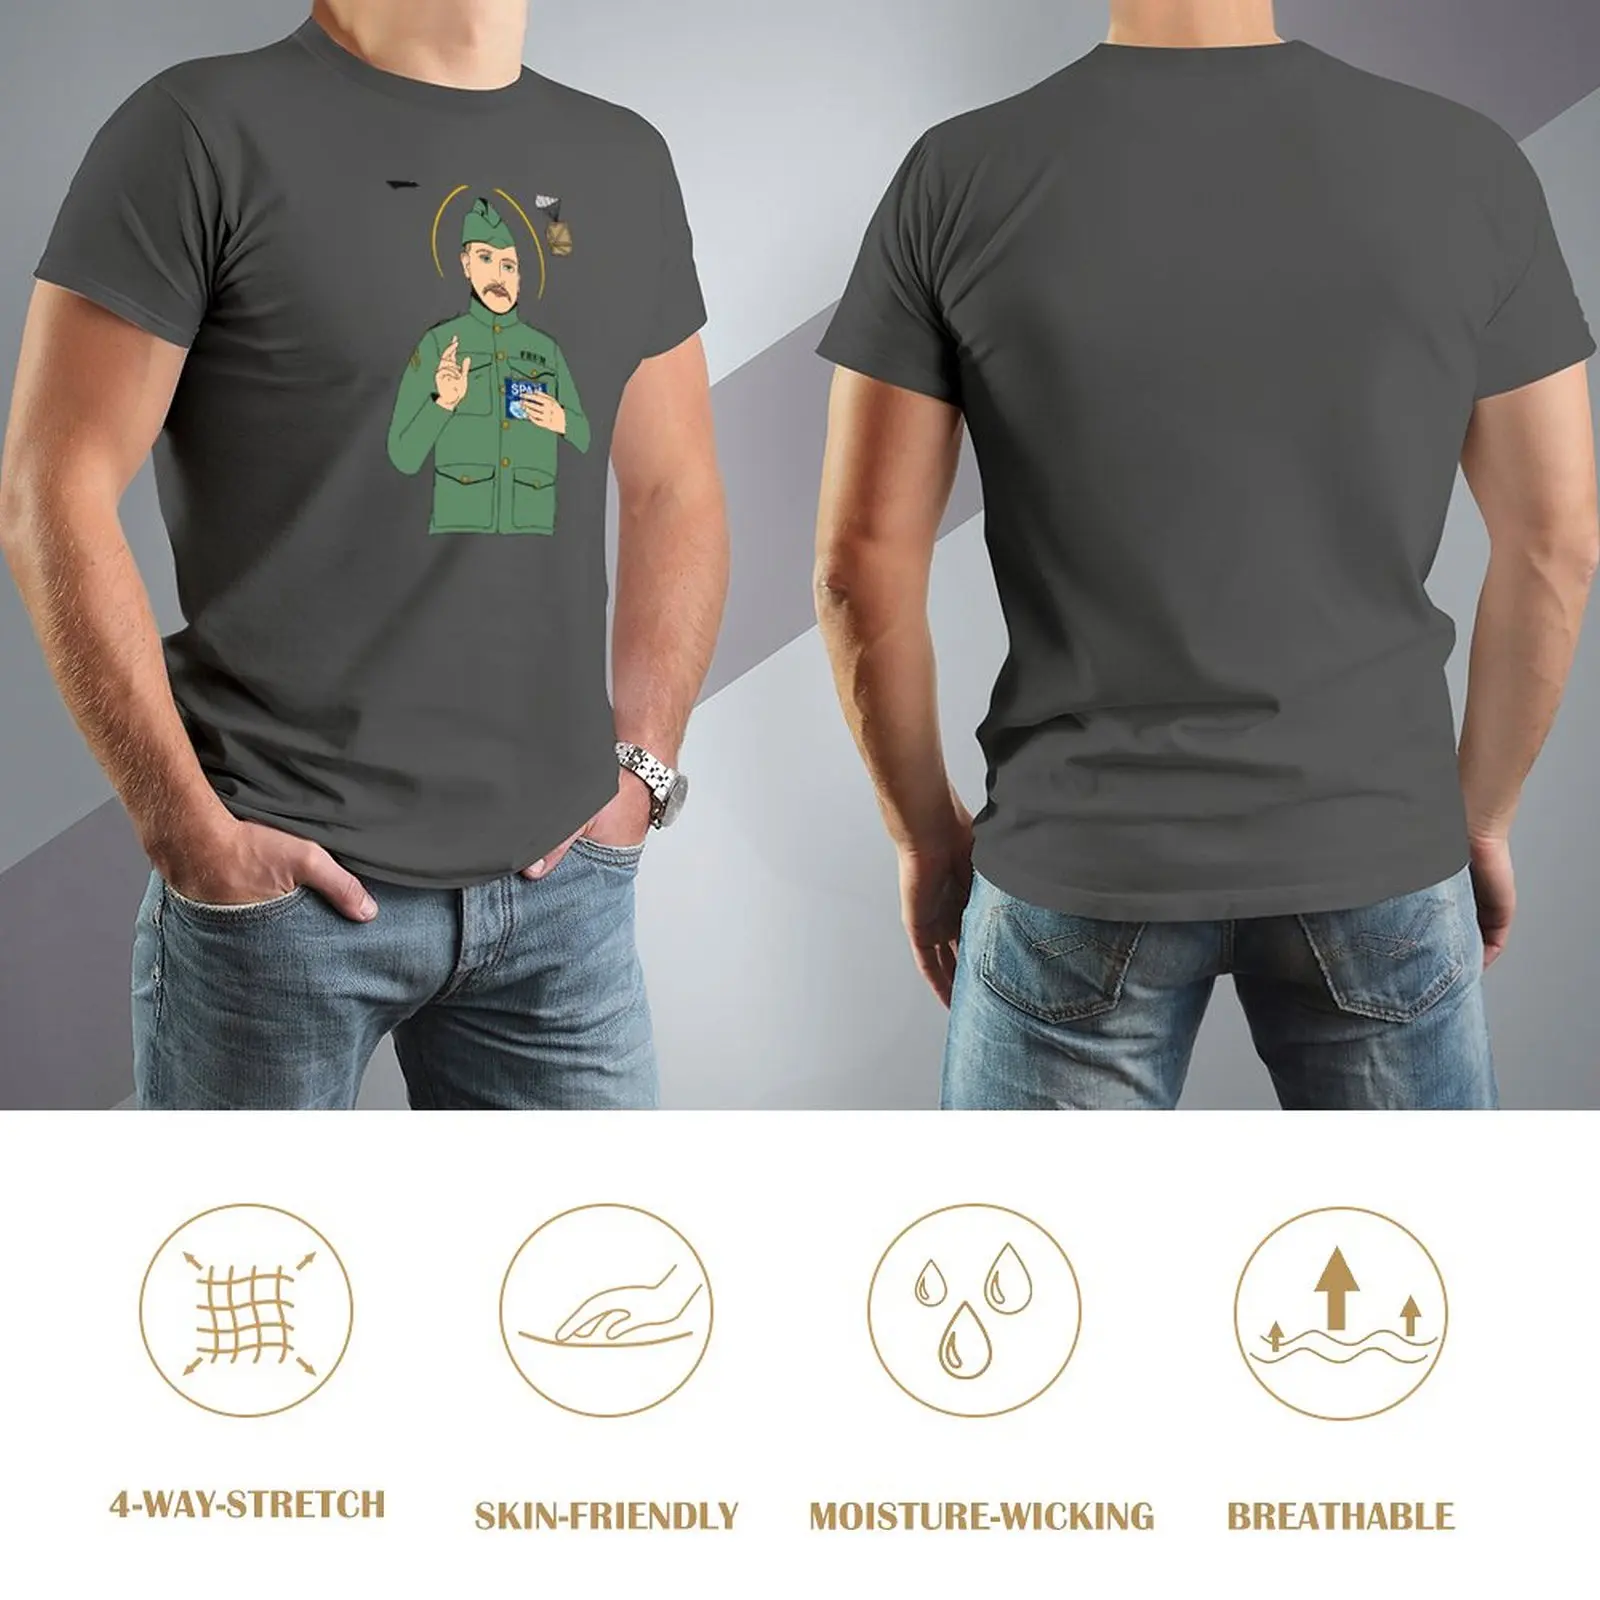 Футболка John Frum Saves, футболки большого размера, быстросохнущая футболка, мужская футболка Изображение 2